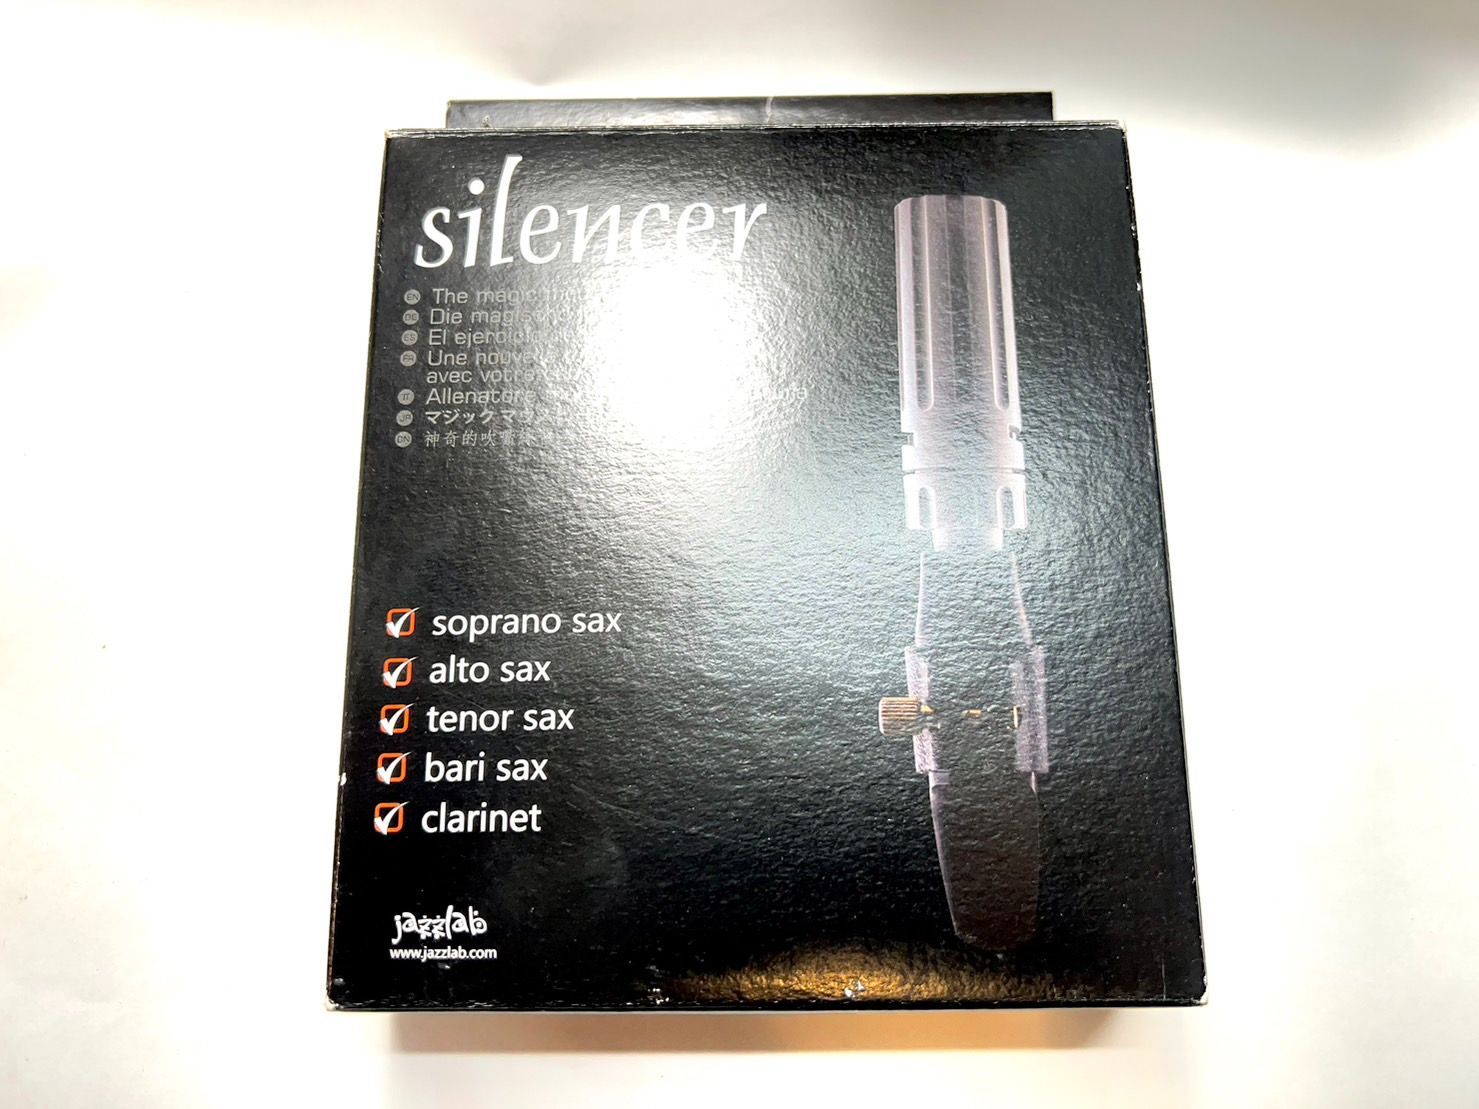 単品購入 Jazzlab Silencer サイレンサーMK2 弱音器 | www.takalamtech.com